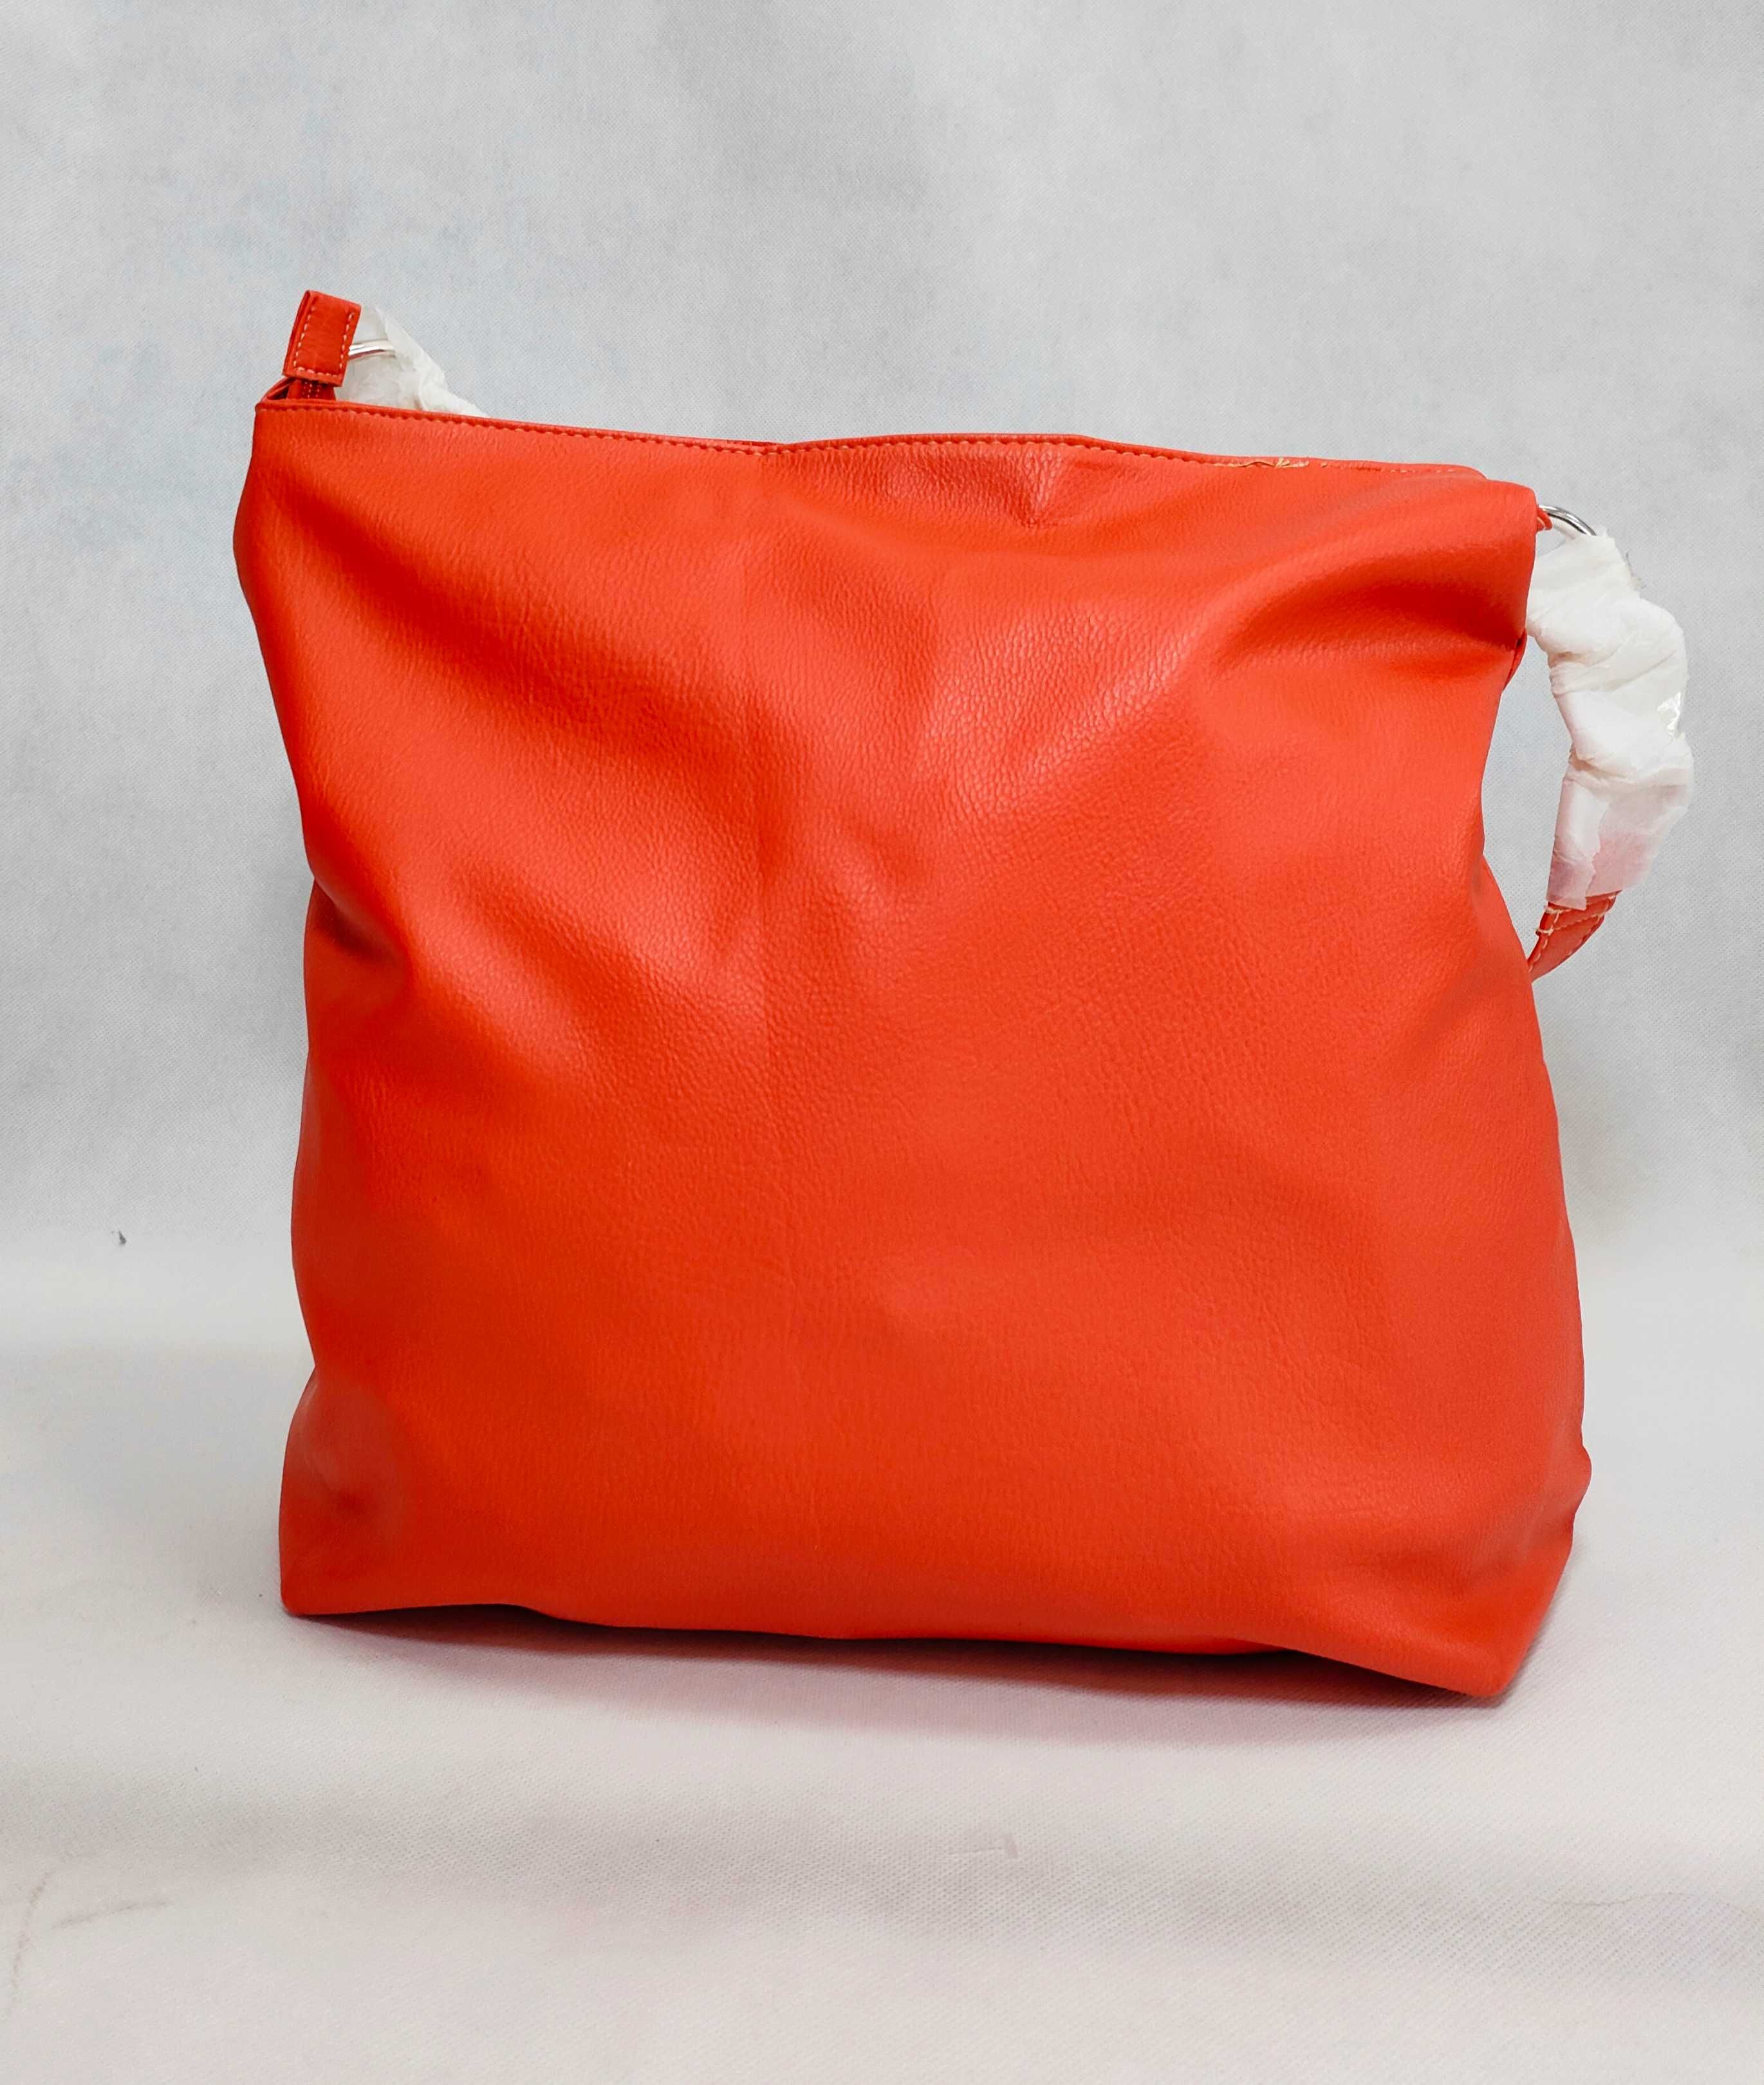 Torebka na ramię duża torba pojemna pomarańczowa LA REDOUTE TB002